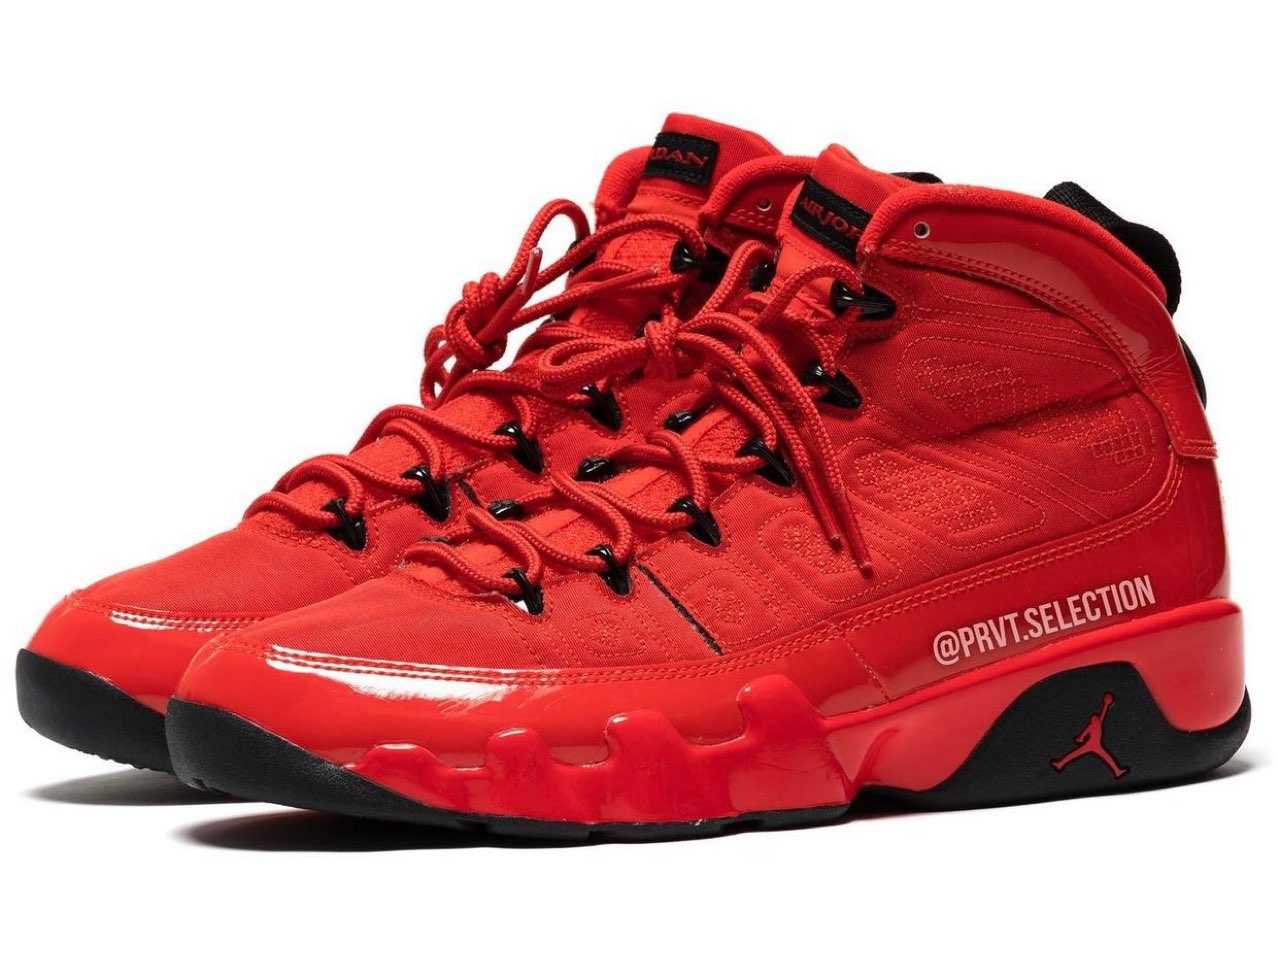 Nike】Air Jordan 9 Retro “Chile Red”が2022年5月7日に発売予定 | UP 